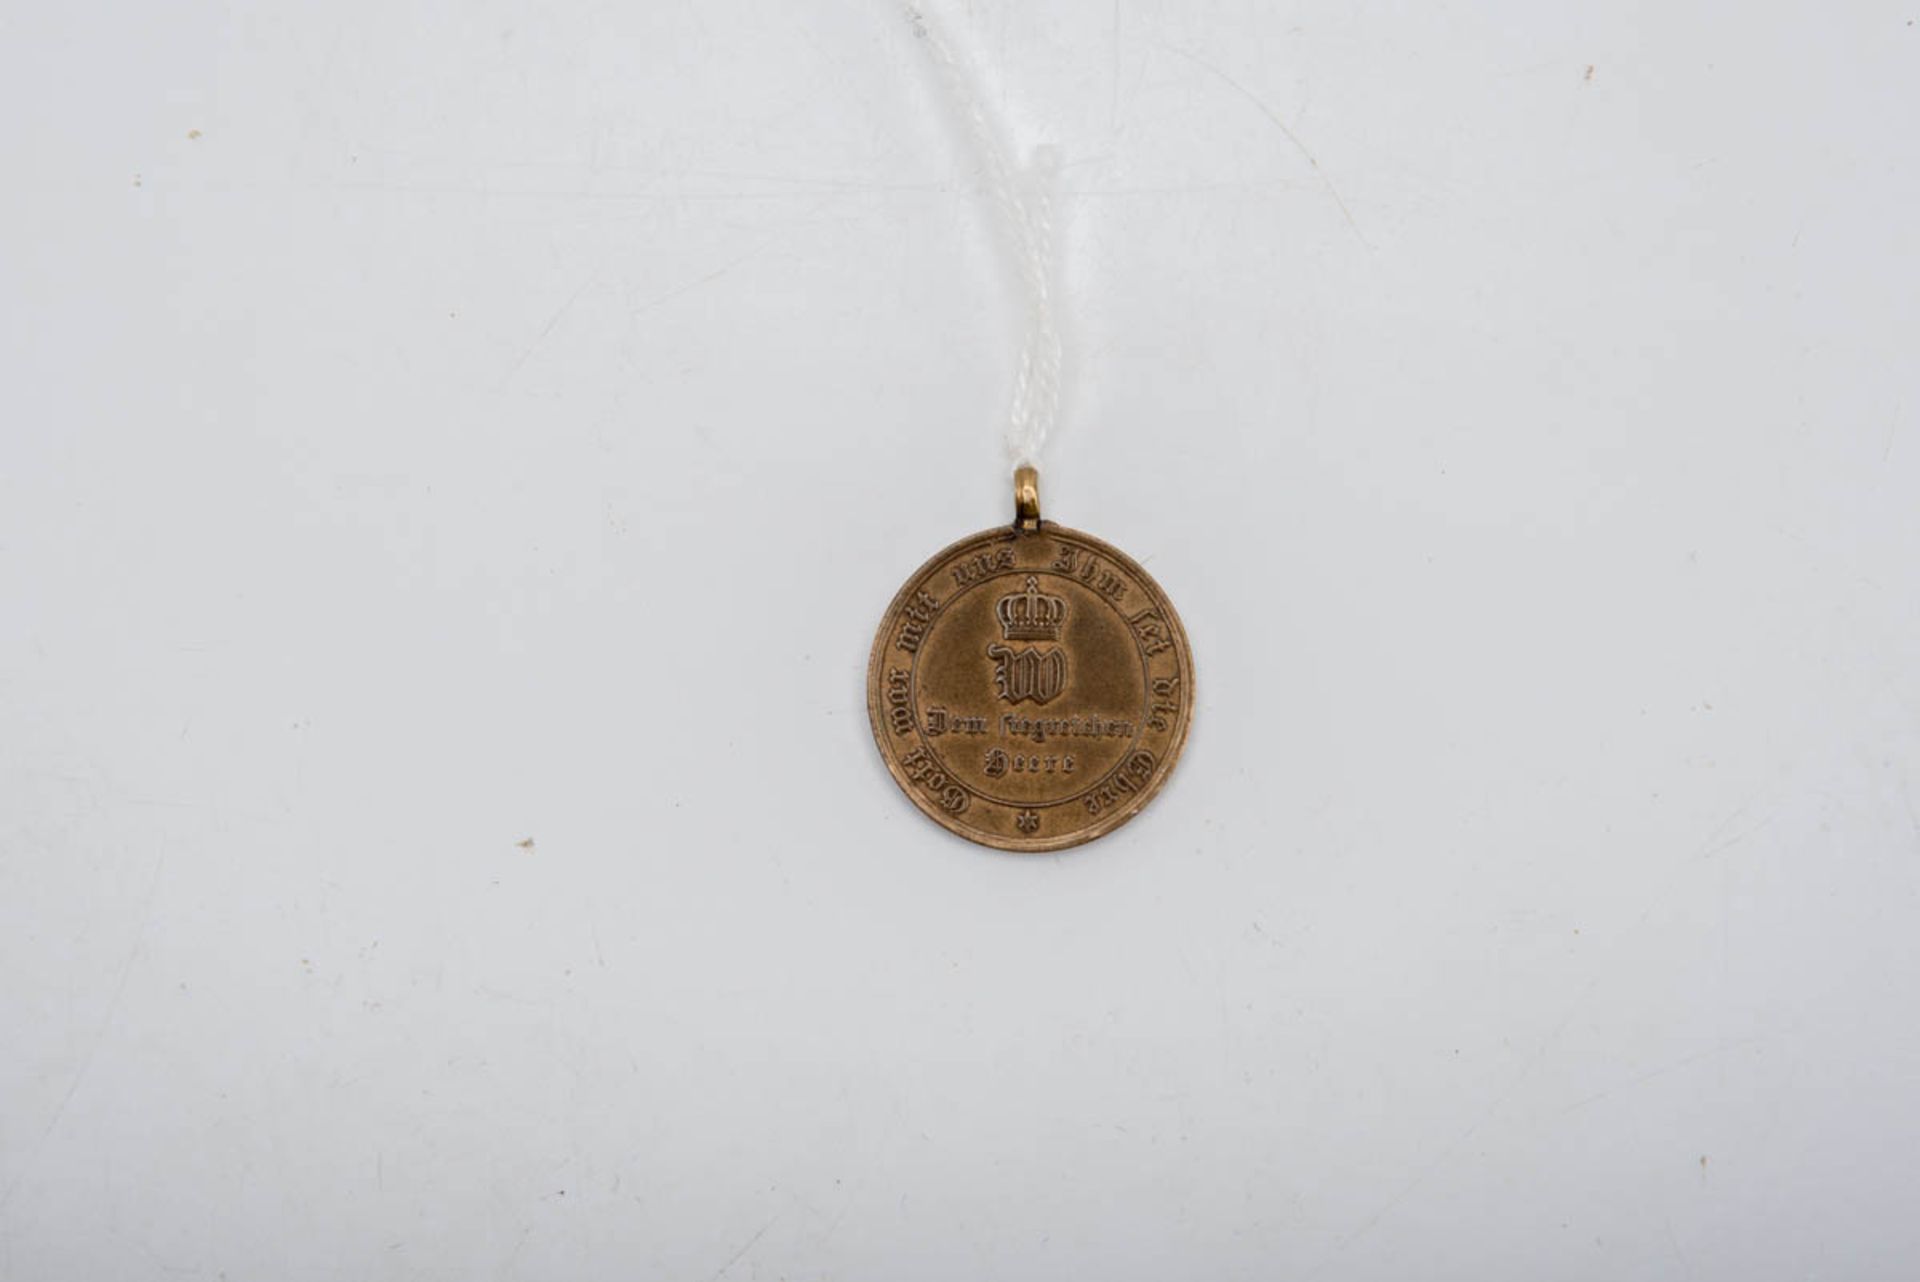 Bronzemedaille Preußen Bronzemedaille Preußen, Größe: 2,9 cm. Dem siegreichen Heere 1870/71, mit - Bild 2 aus 2